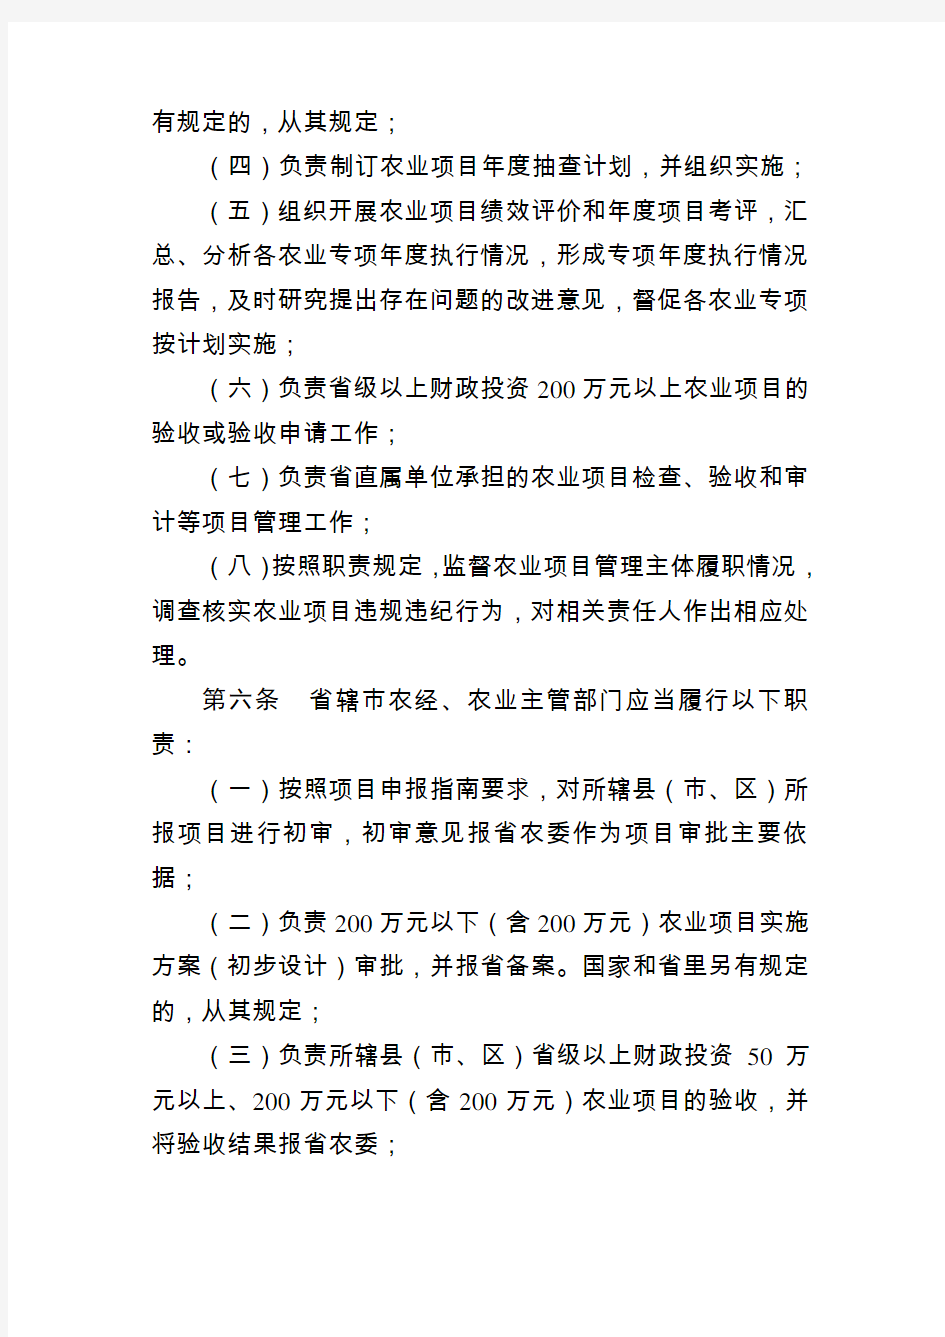 江苏省农业项目管理责任制度(2013版本)